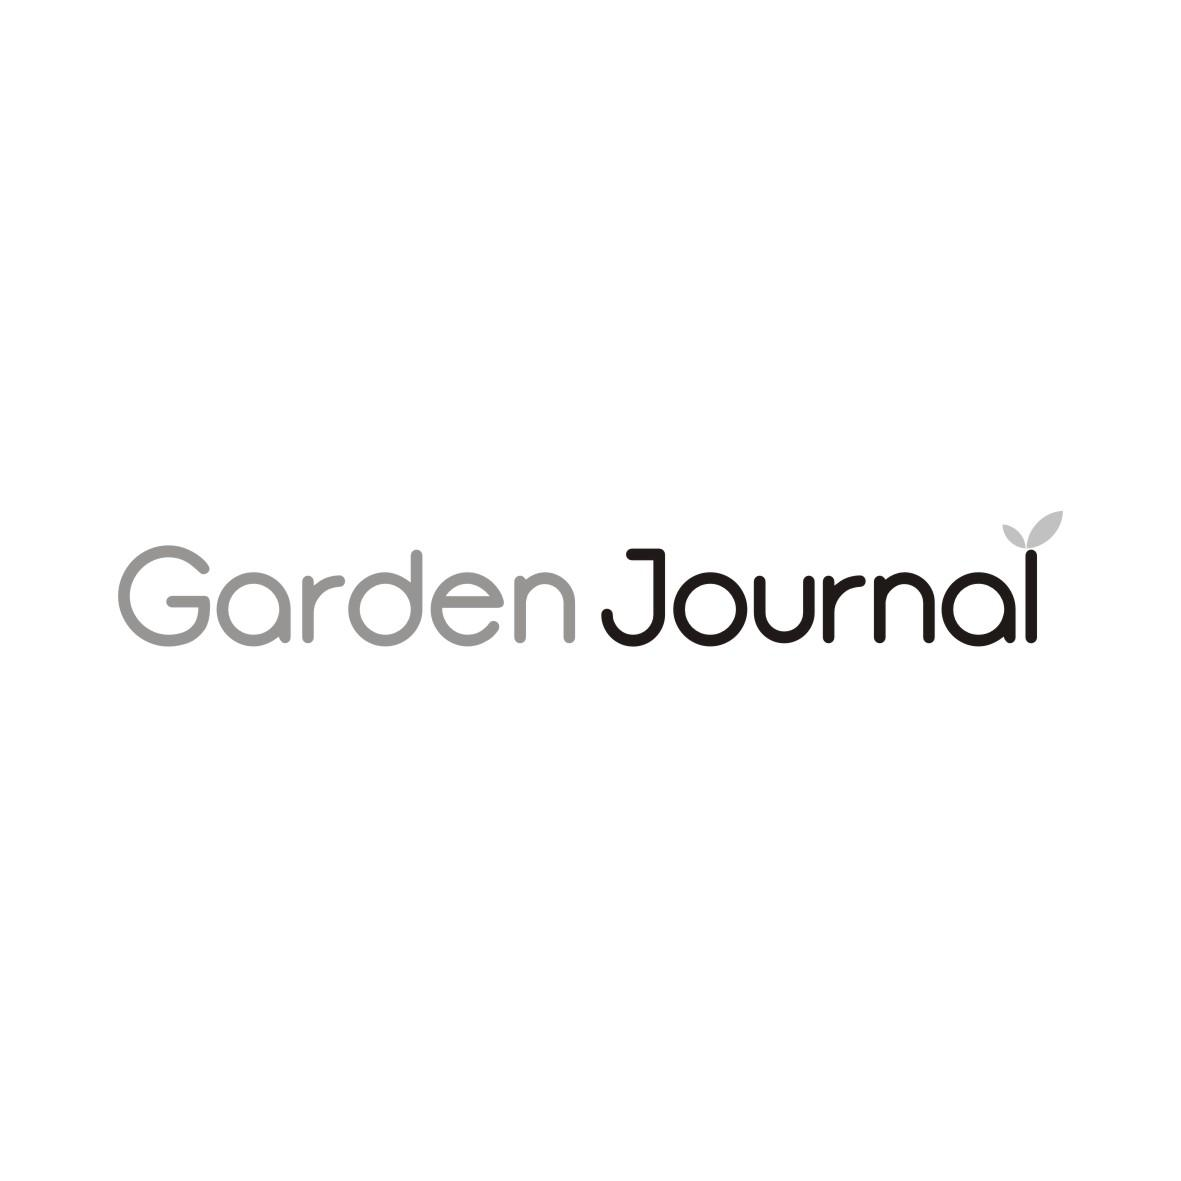 44类-医疗美容GARDEN JOURNAL商标转让